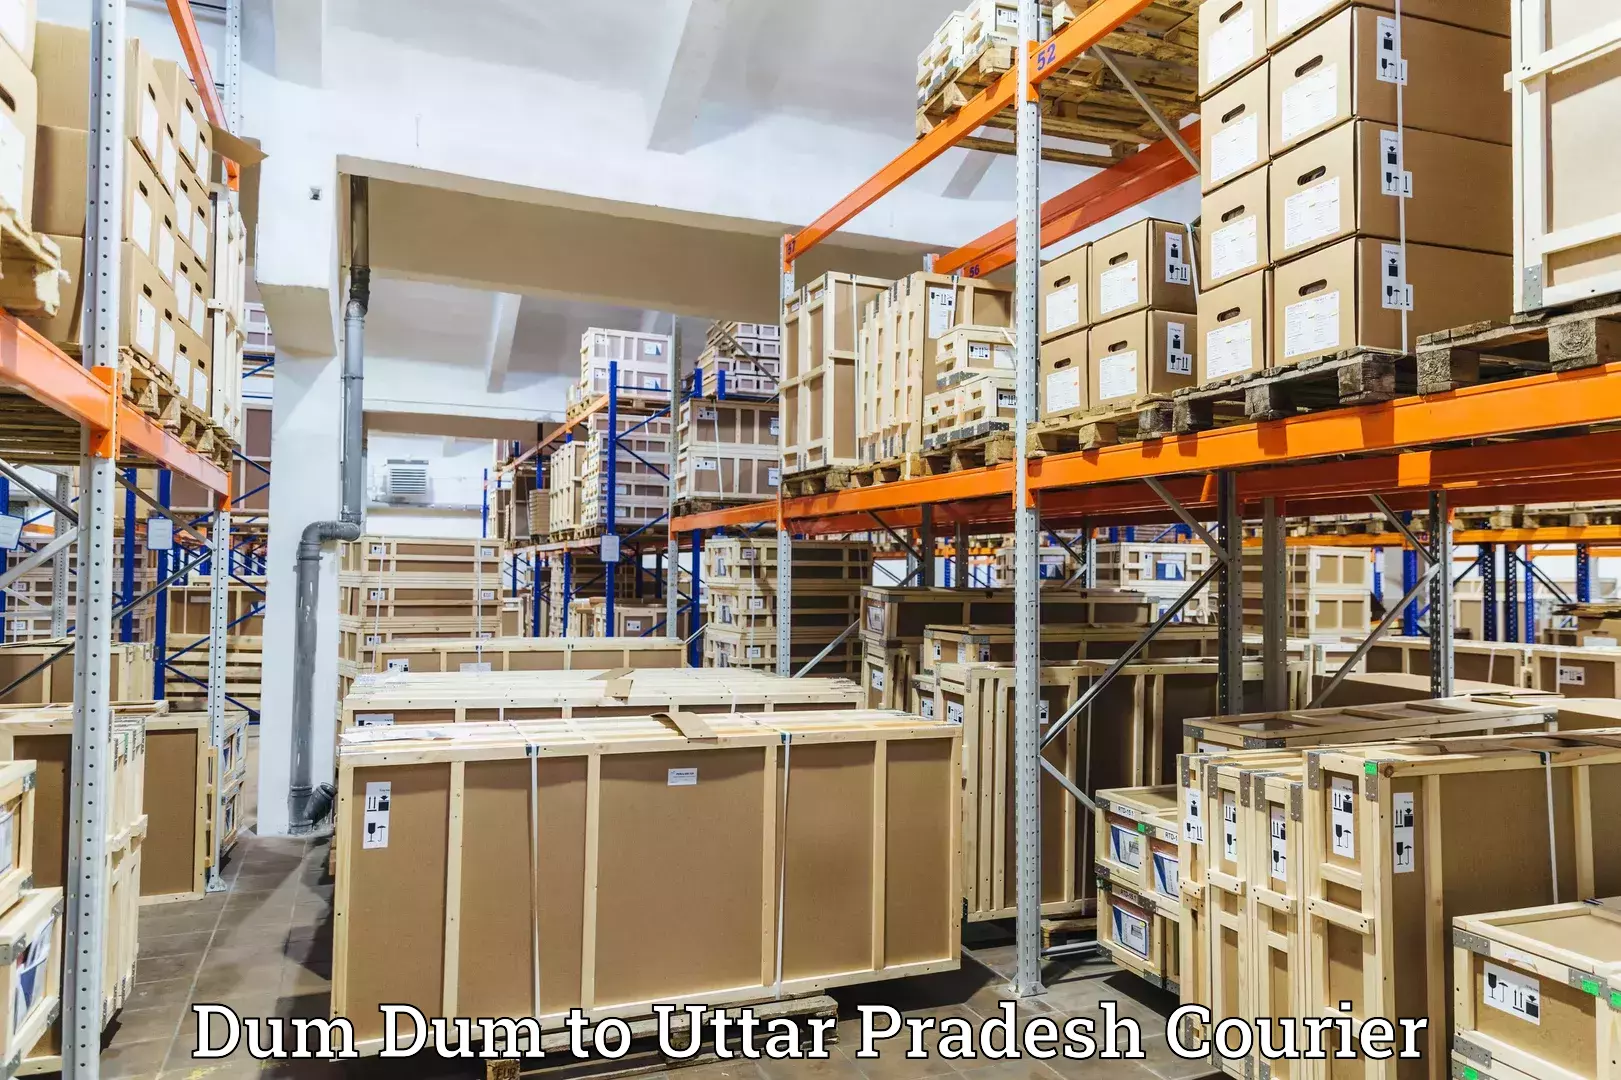 Reliable parcel services Dum Dum to Cholapur